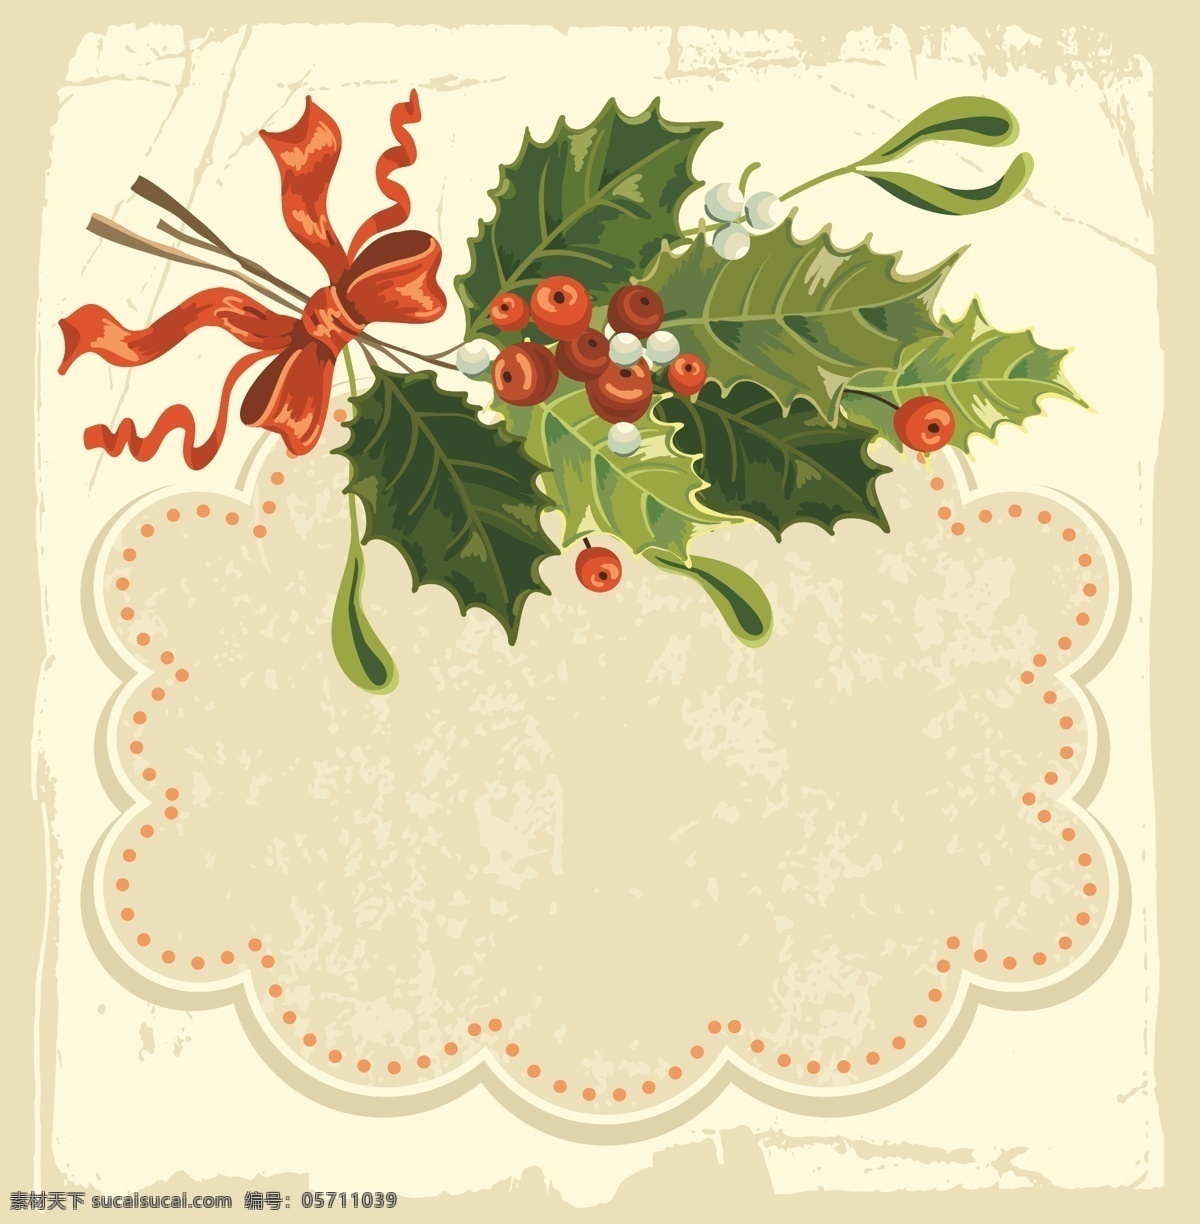 圣诞节 卡片 背景 矢量 边框 蝴蝶结 绿叶 模板 墨迹 设计稿 丝带 红果子 节日大全 源文件 节日素材